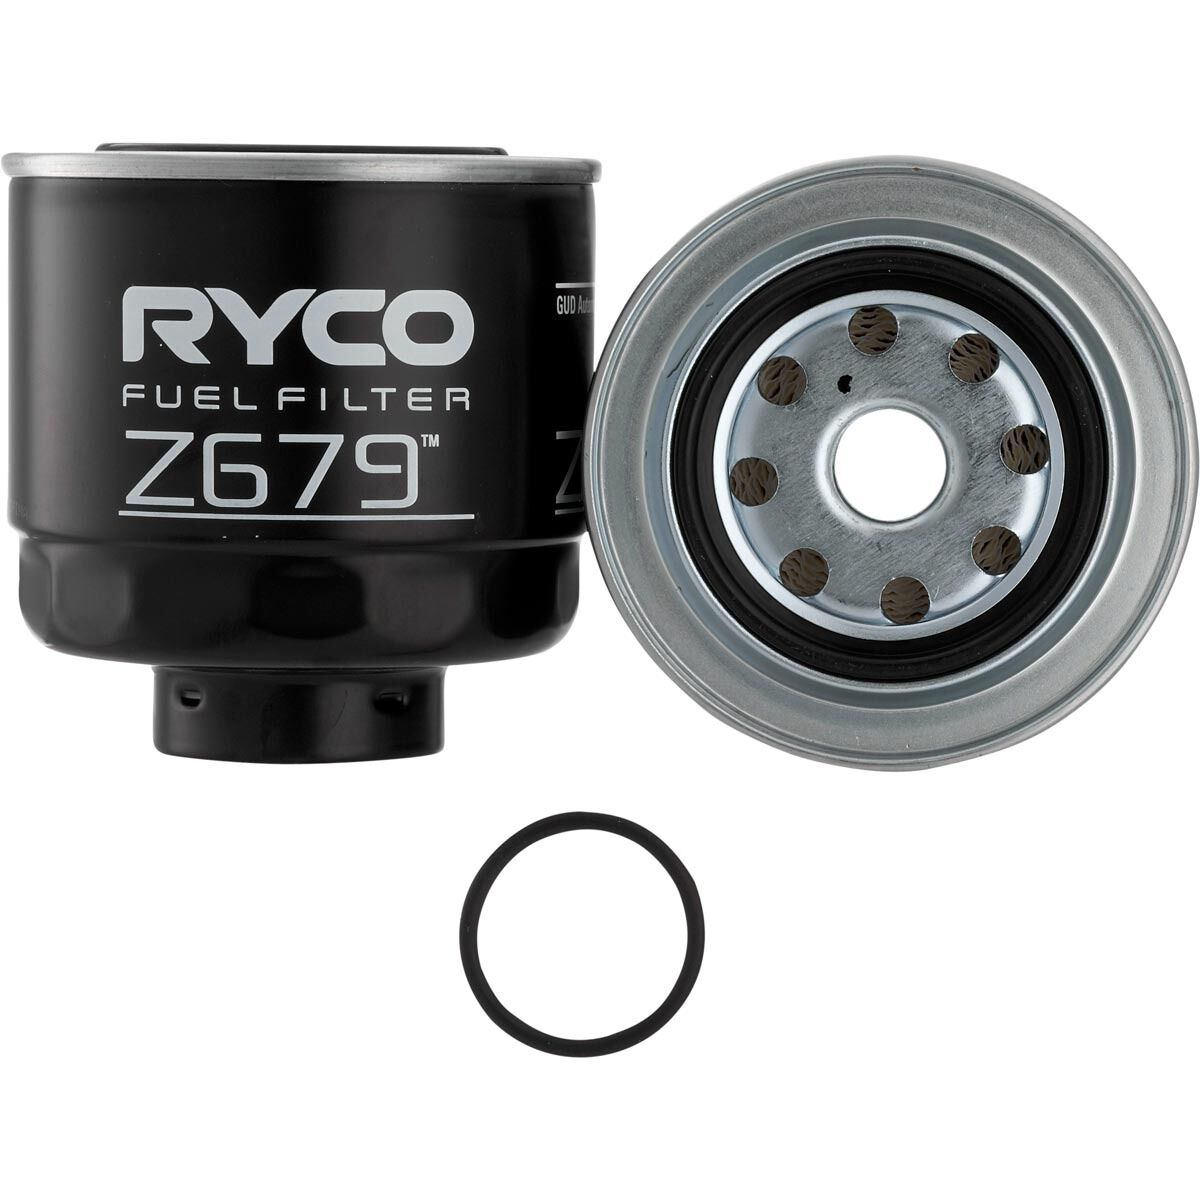 Ryco Fuel Filter - Z679, , scaau_hi-res